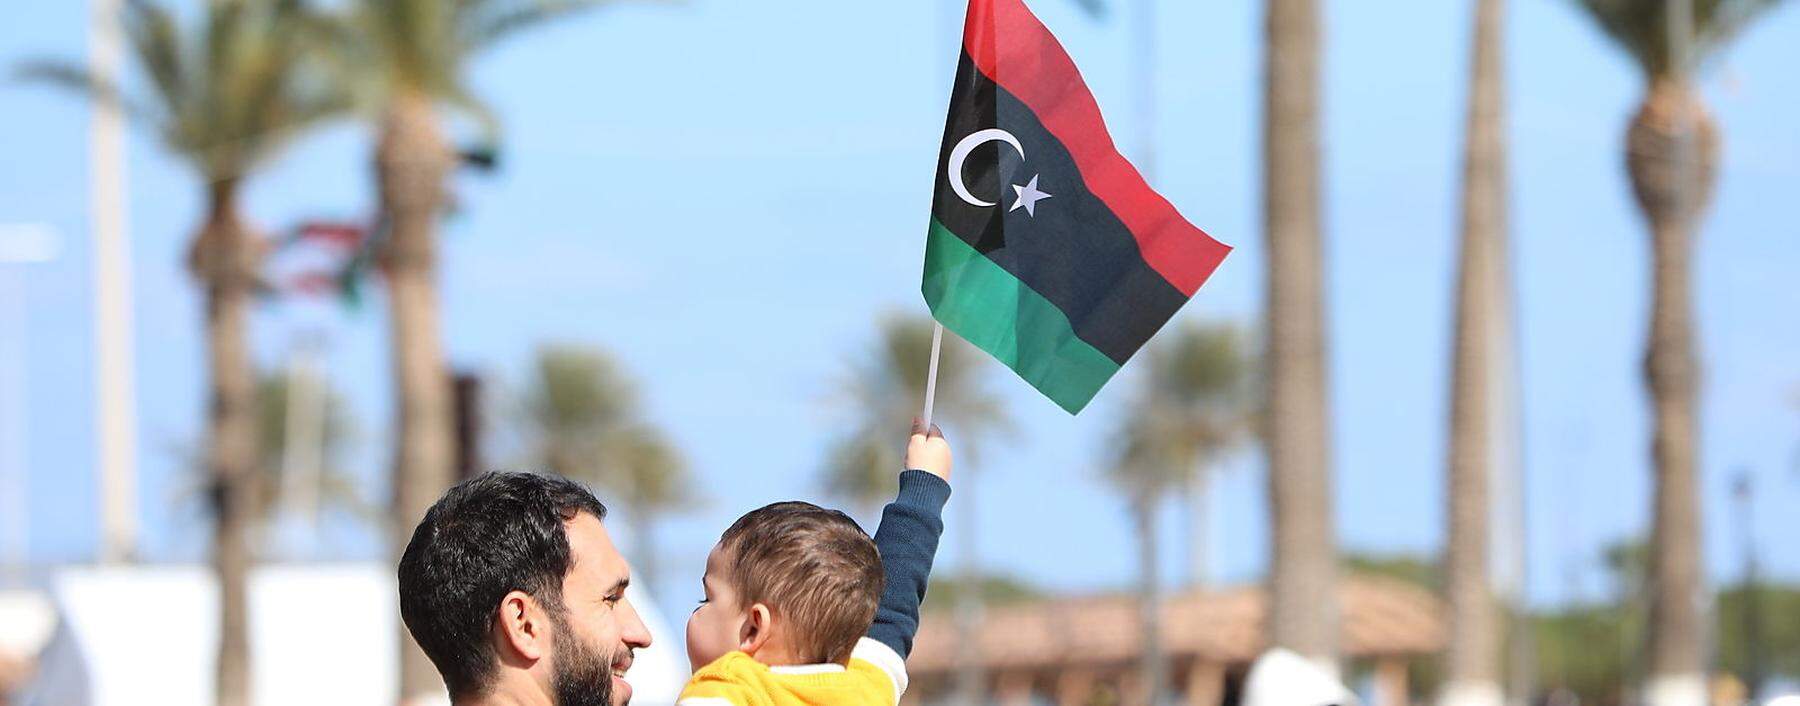 Mit Gaddafis Sturz erhielt Libyen seine alte Fahne zurück. Das Land kämpft mit großen Problemen. 